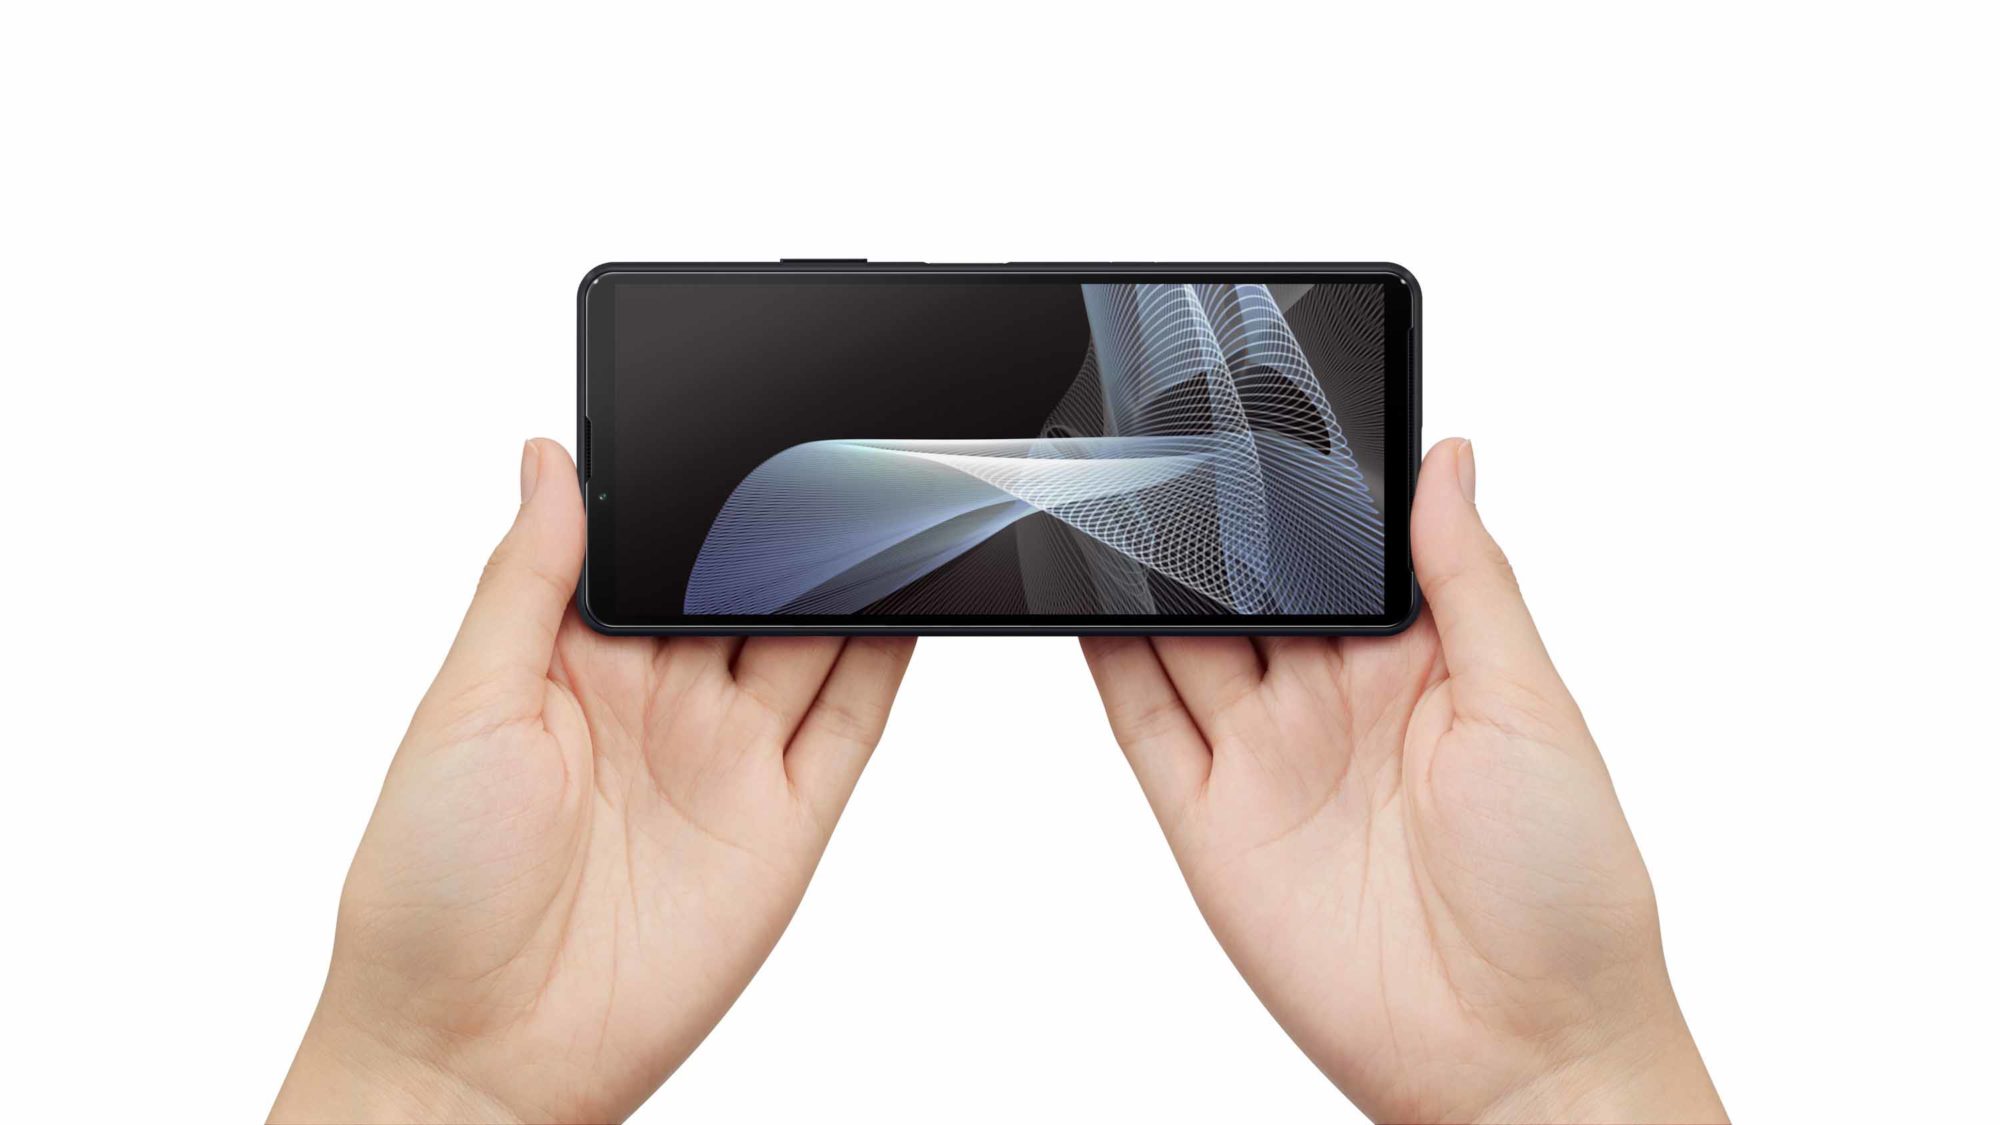 โซนี่ไทยเปิดตัว Xperia 10 III สมาร์ทโฟนระดับกลาง มาพร้อมแบตเตอรี่ที่อึดกว่าเดิม และรองรับ 5G 7